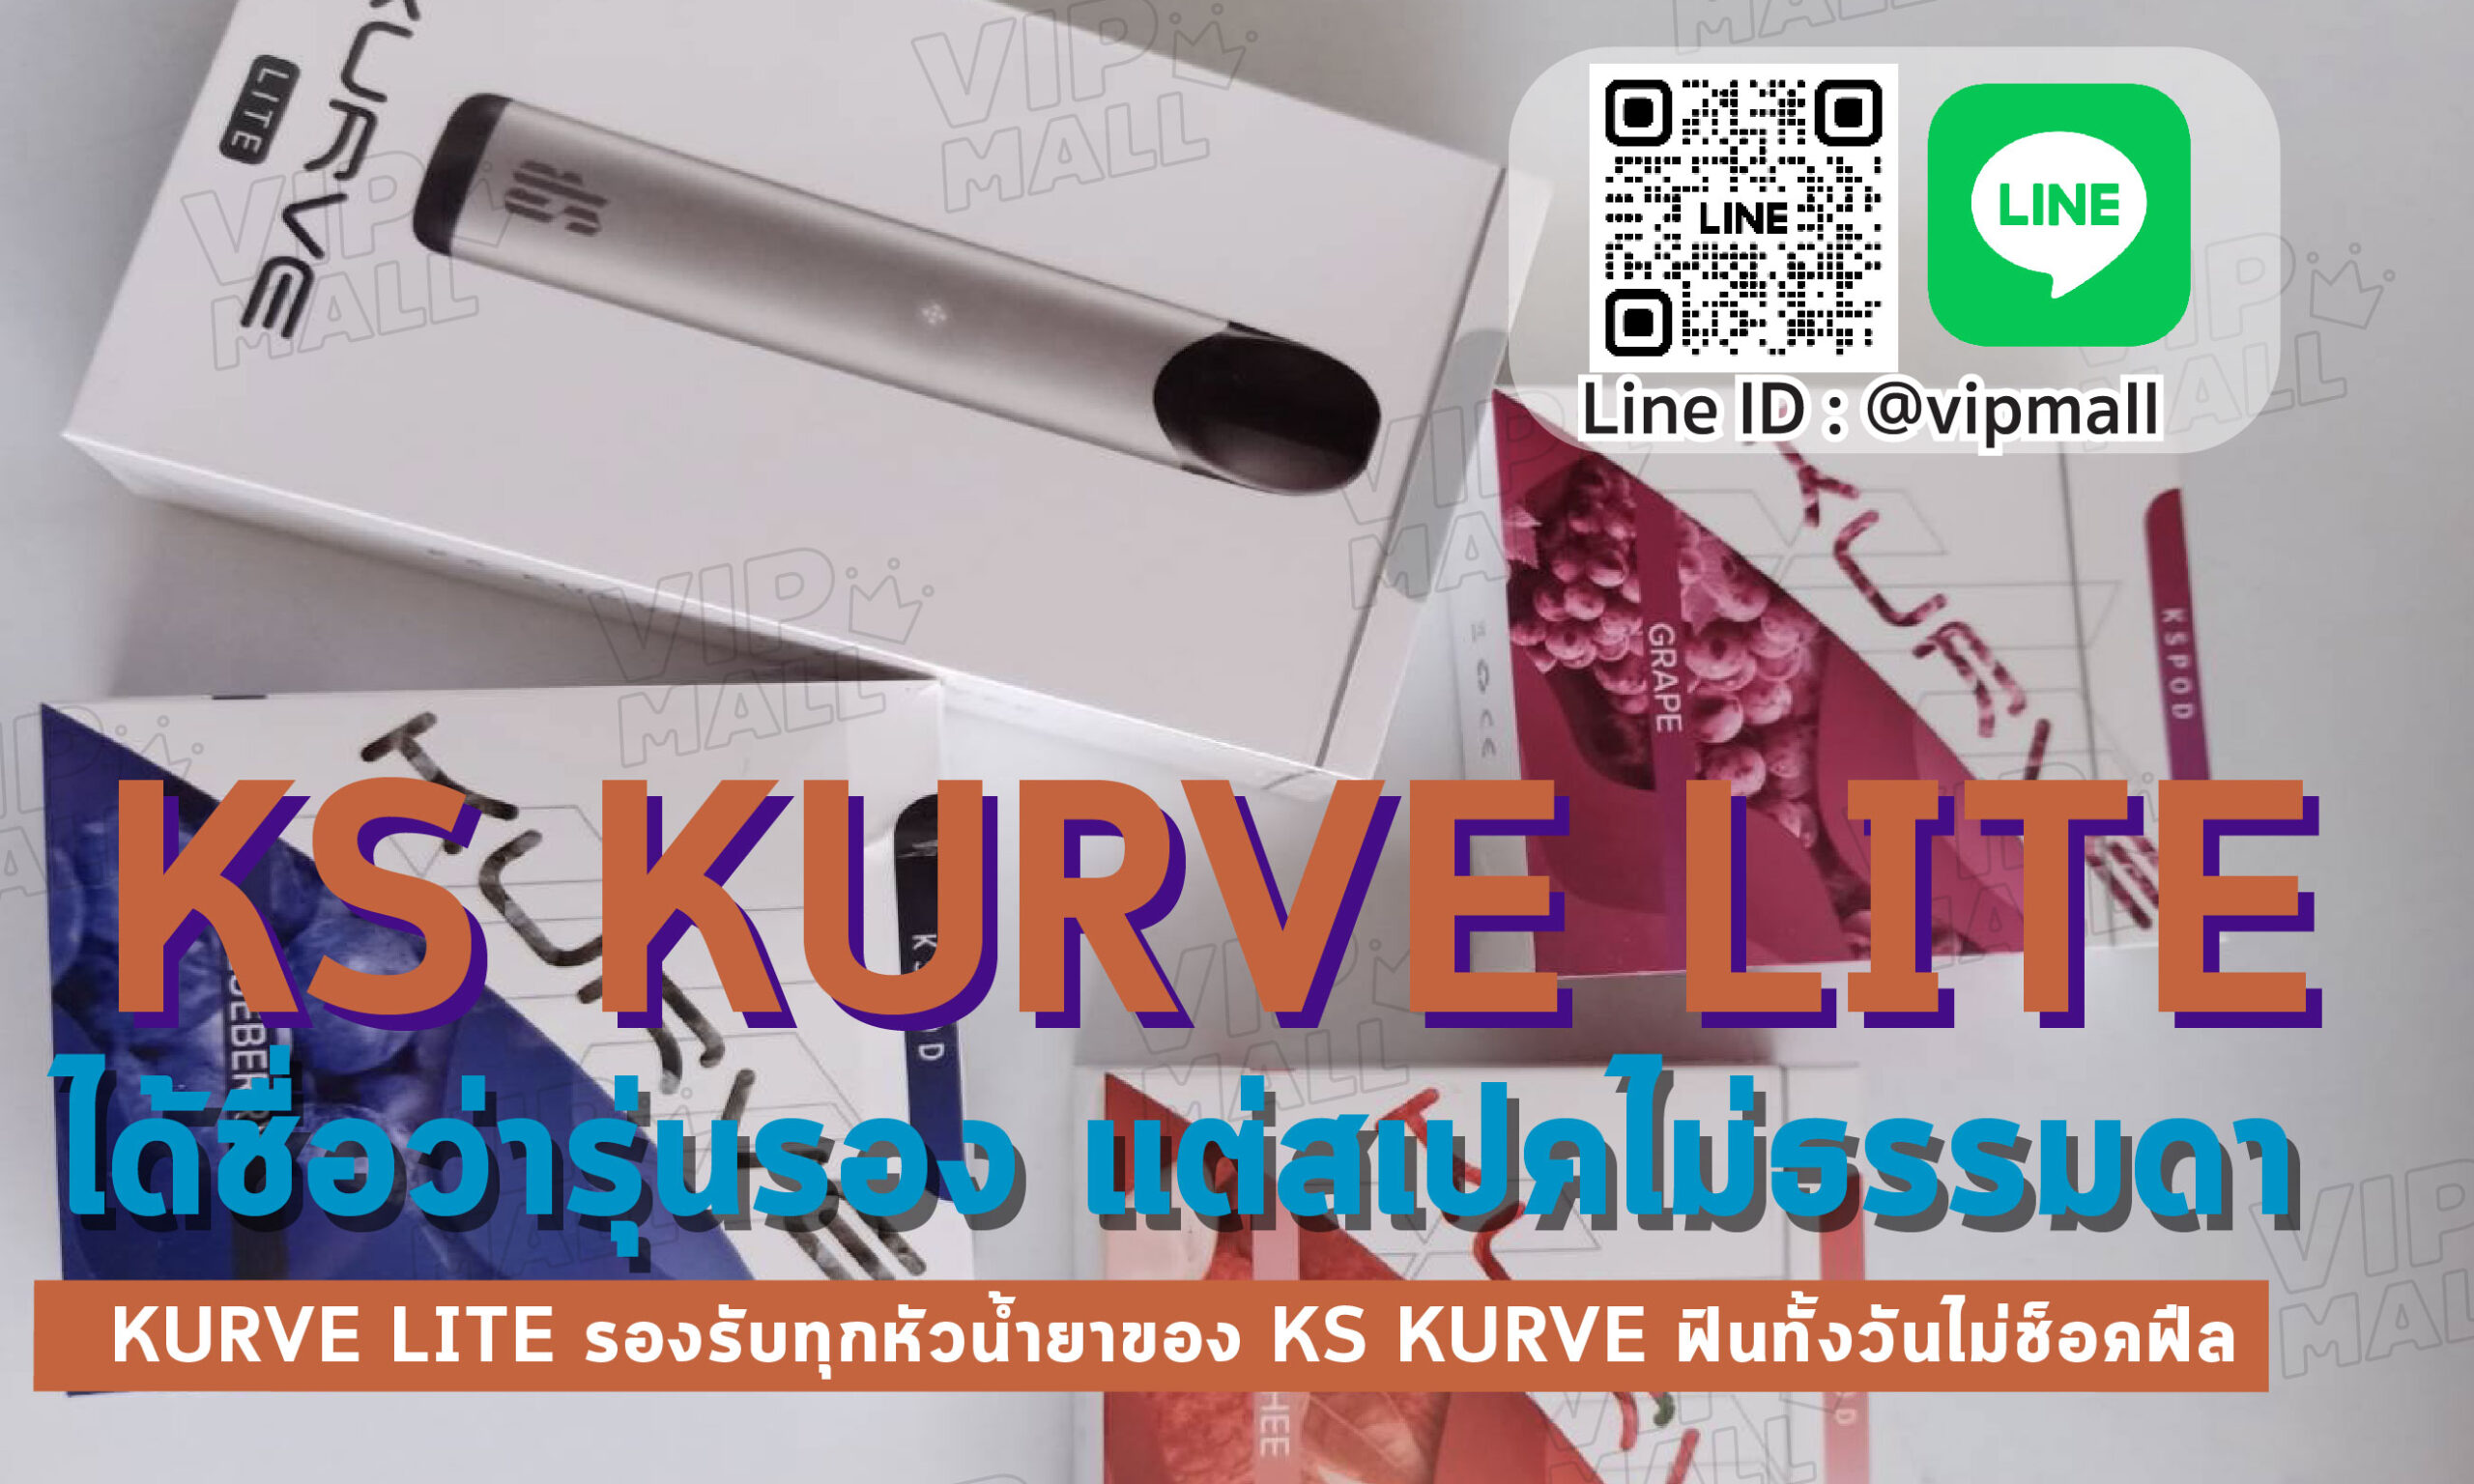 บุหรี่ไฟฟ้า KS Kurve Lite เป็นบุหรี่ไฟฟ้าระบบ Pod system ที่ดีที่สุดในขณะนี้ ใช้ง่าย น้ำยาหมดก็เปลี่ยนหัวพอตได้ทันที VIPMALL พร้อมจัดจำหน่าย